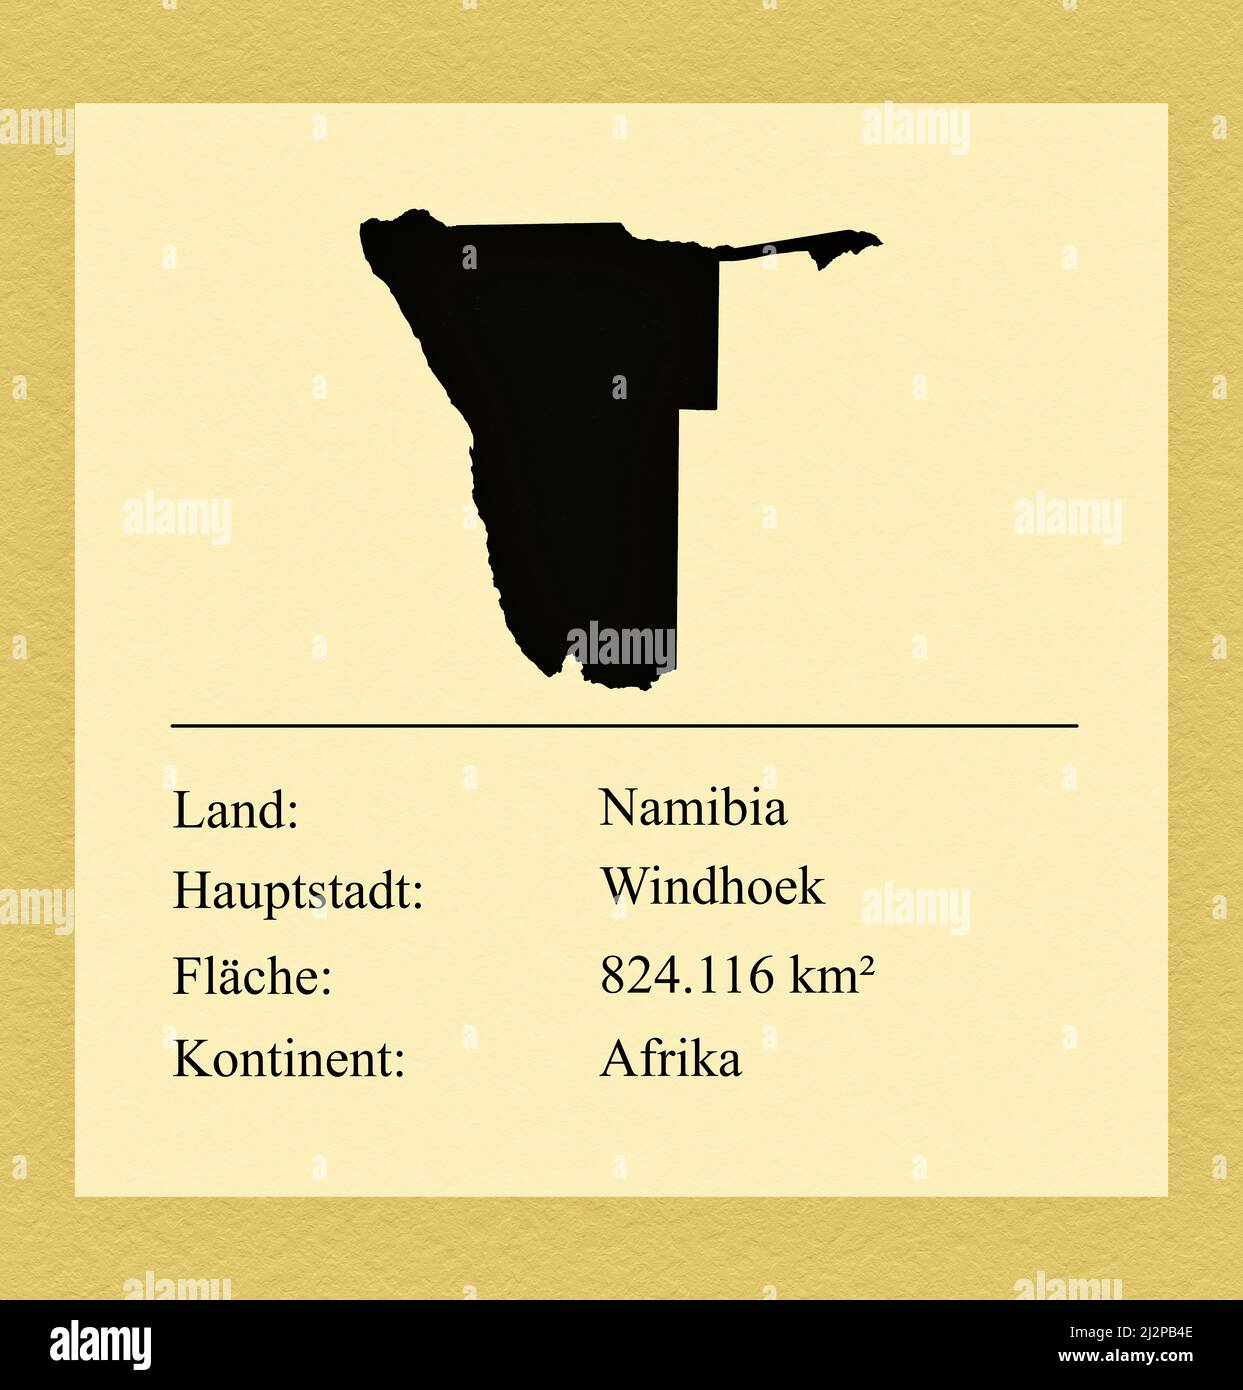 Umrisse des Landes Namibia, darunter ein kleiner Steckbrief mit Ländernamen, Hauptstadt, Fläche und Kontinent Foto de stock